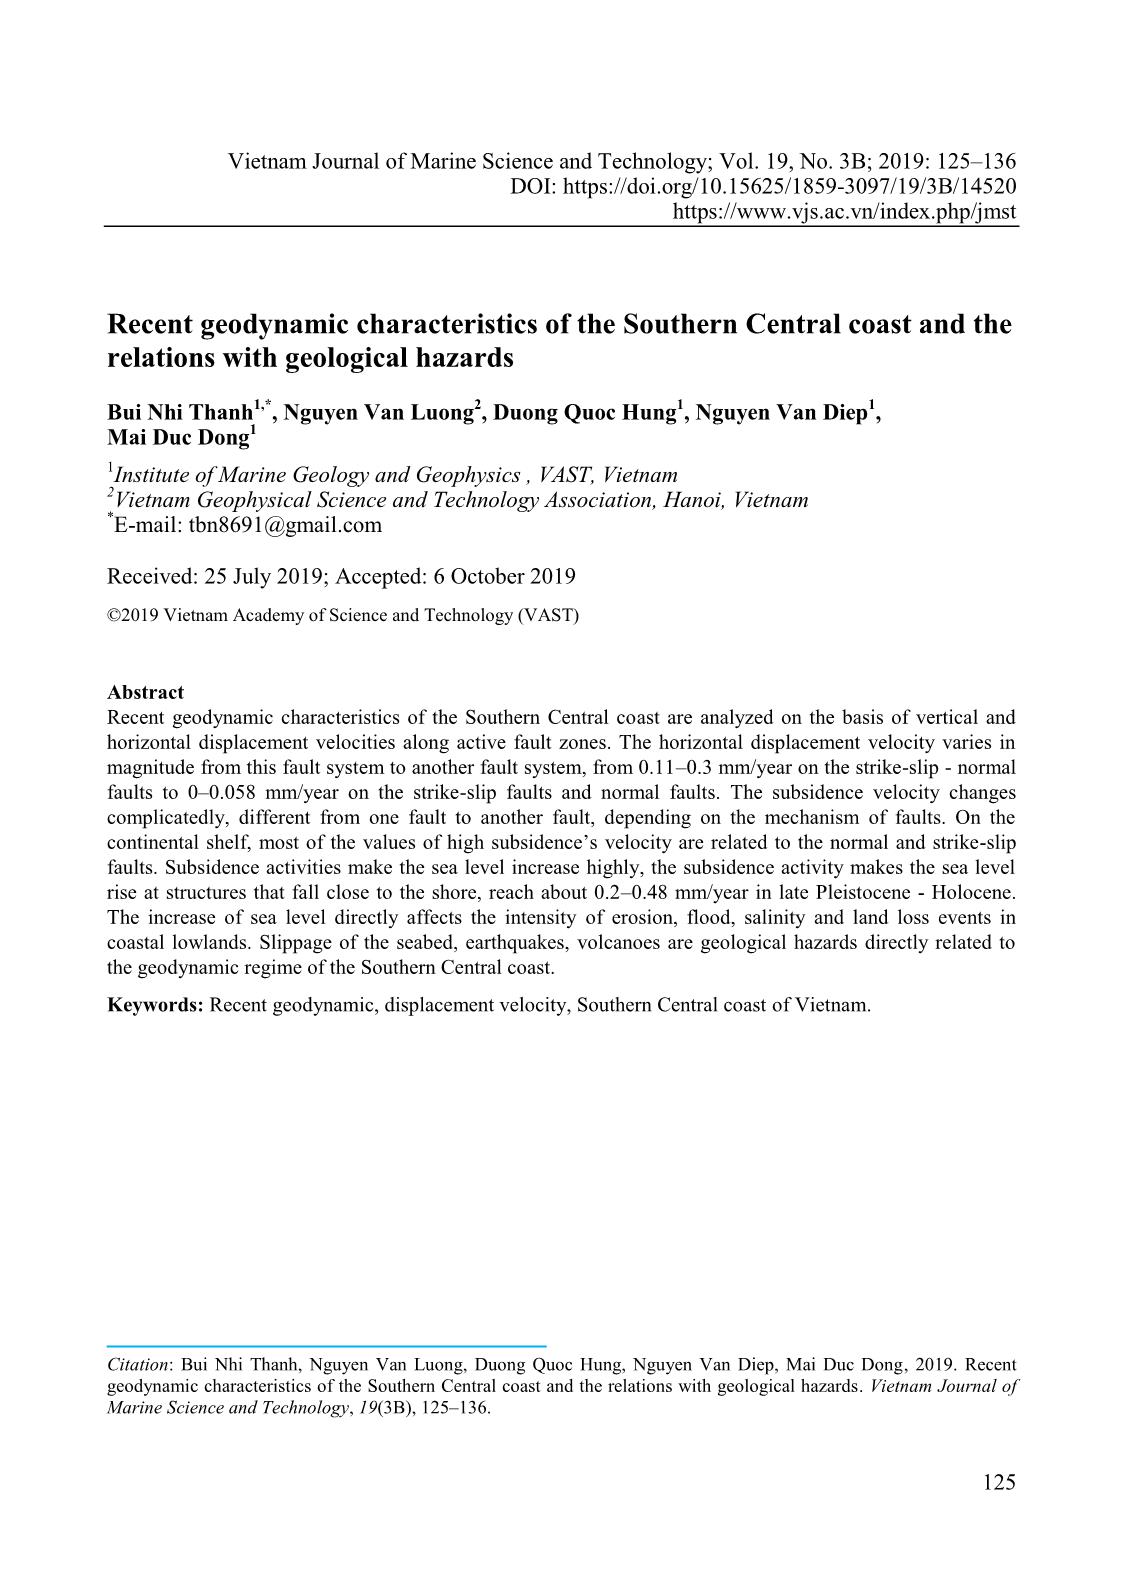 Đặc điểm địa động lực hiện đại khu vực ven biển Nam Trung Bộ và mối liên quan với các tai biến địa chất trang 1